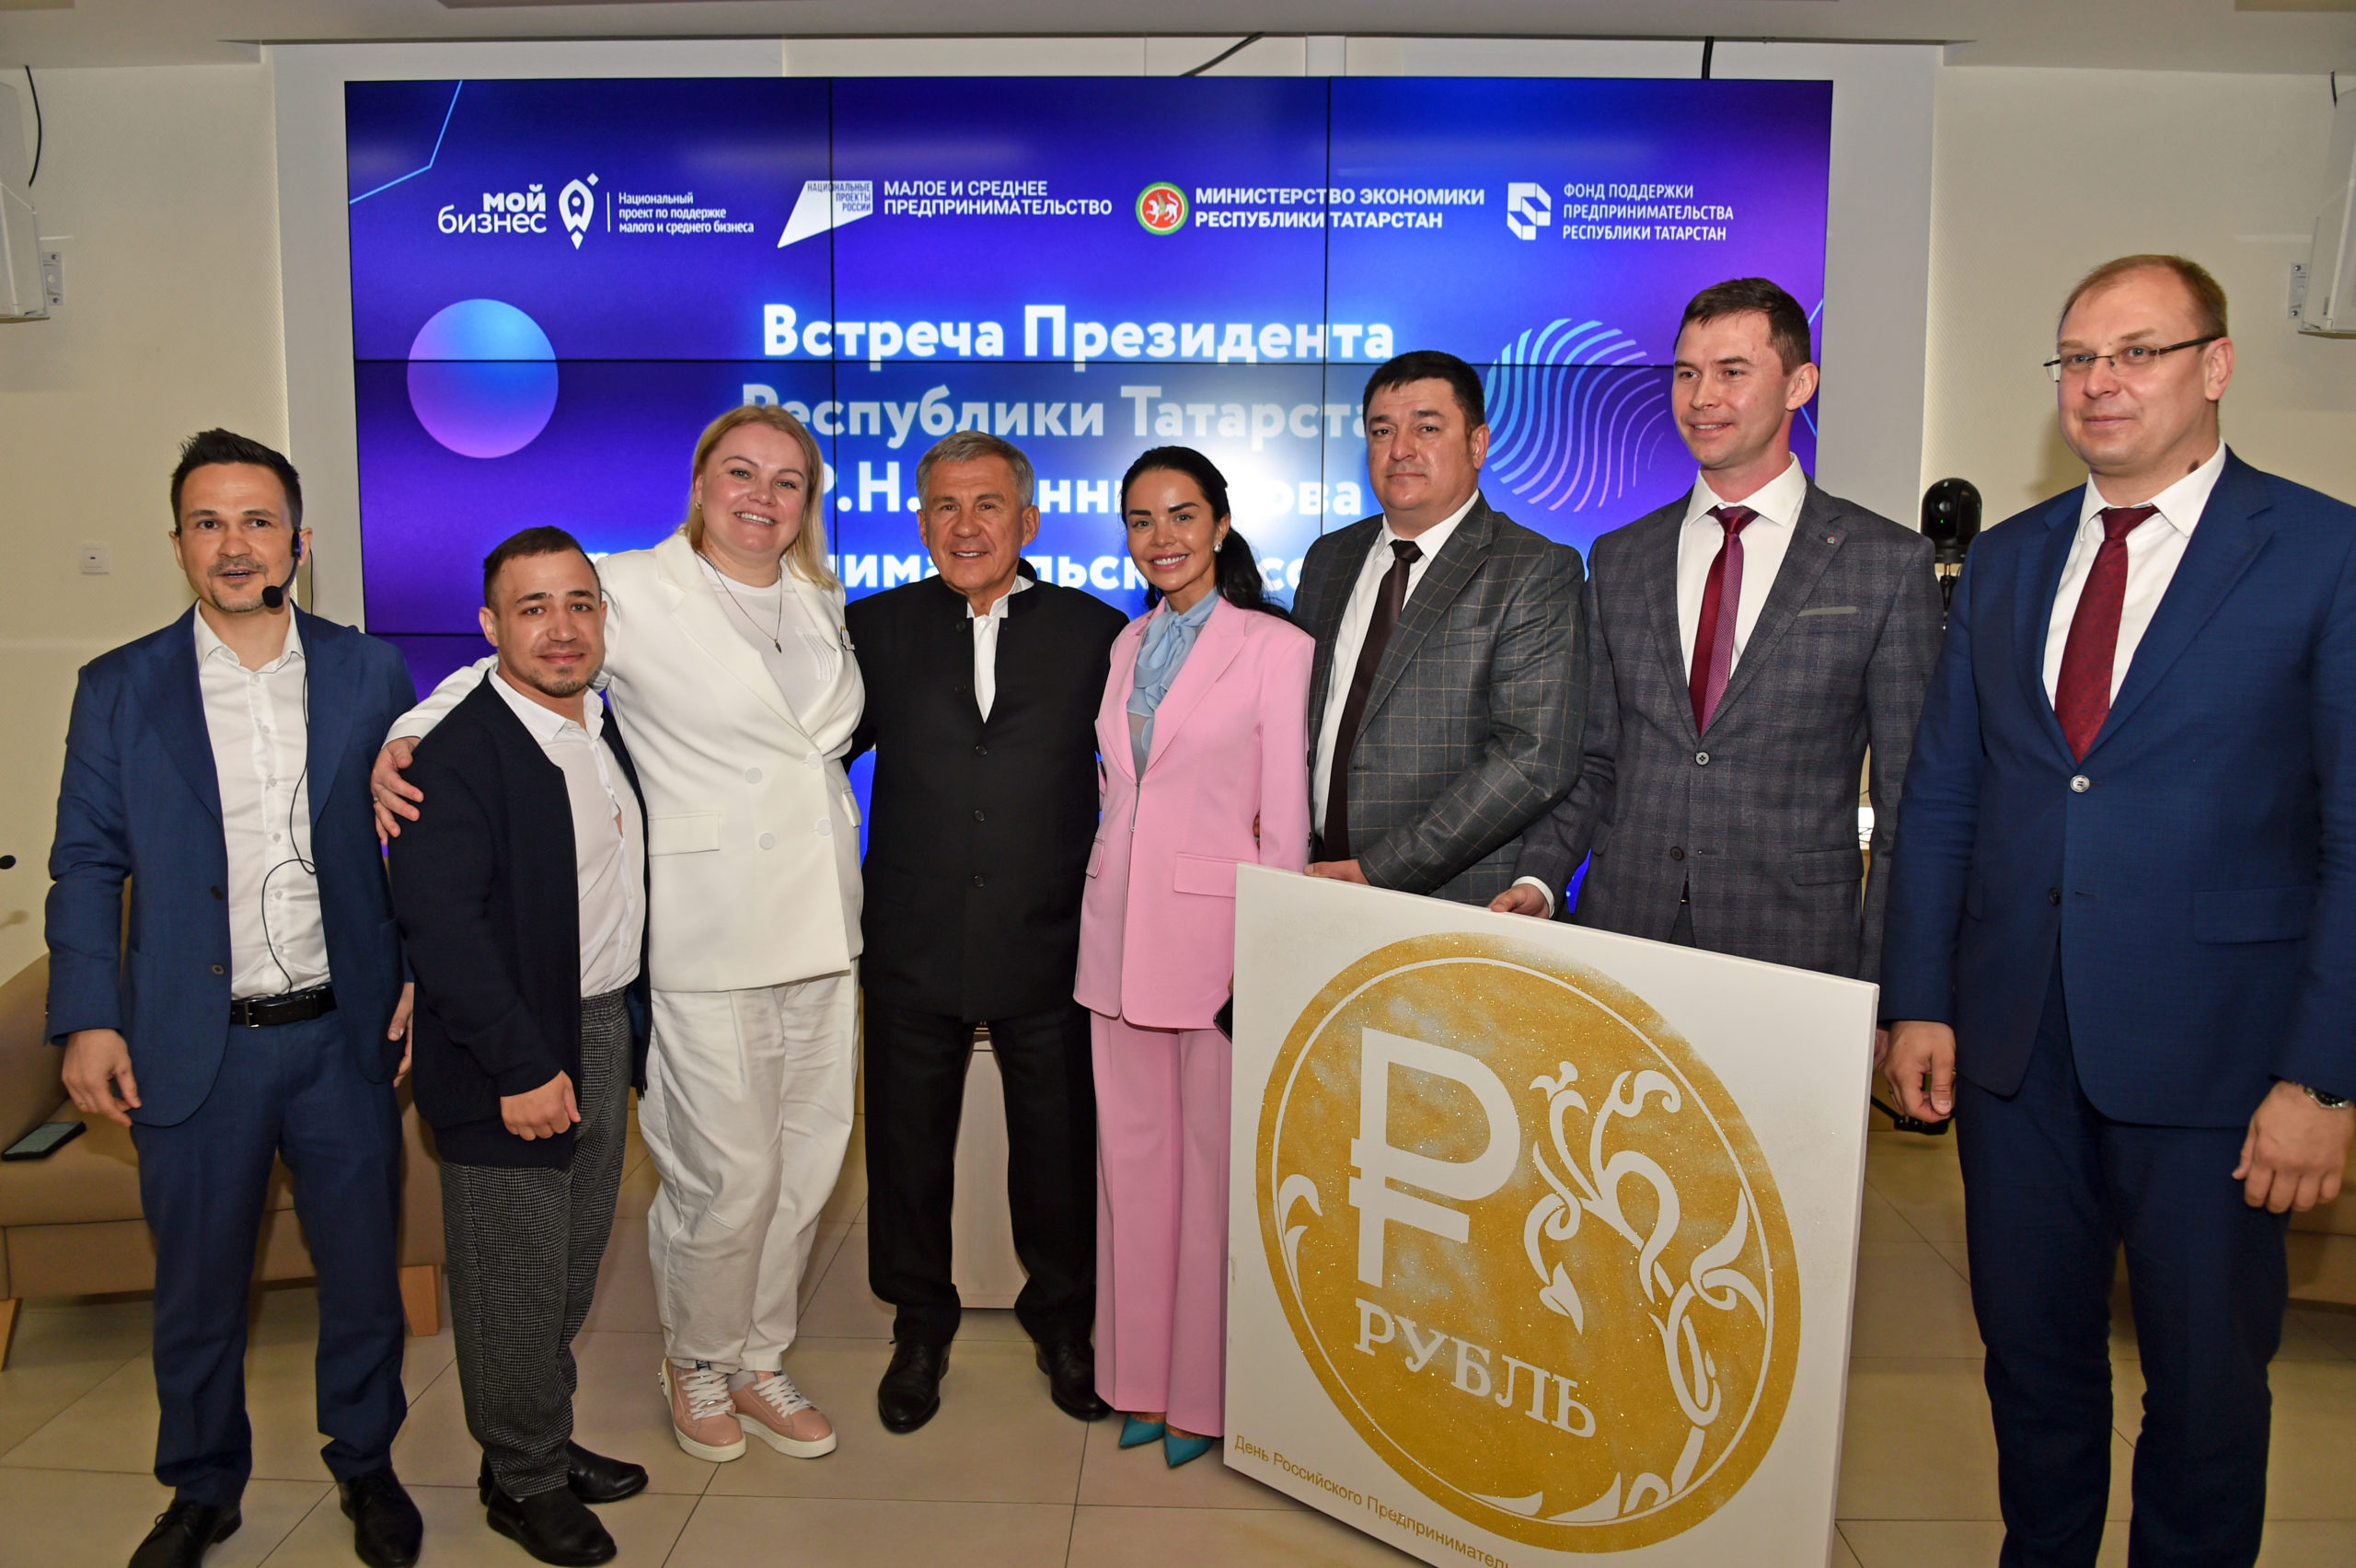 Рустам Минниханов поздравил предпринимателей республики с профессиональным праздником